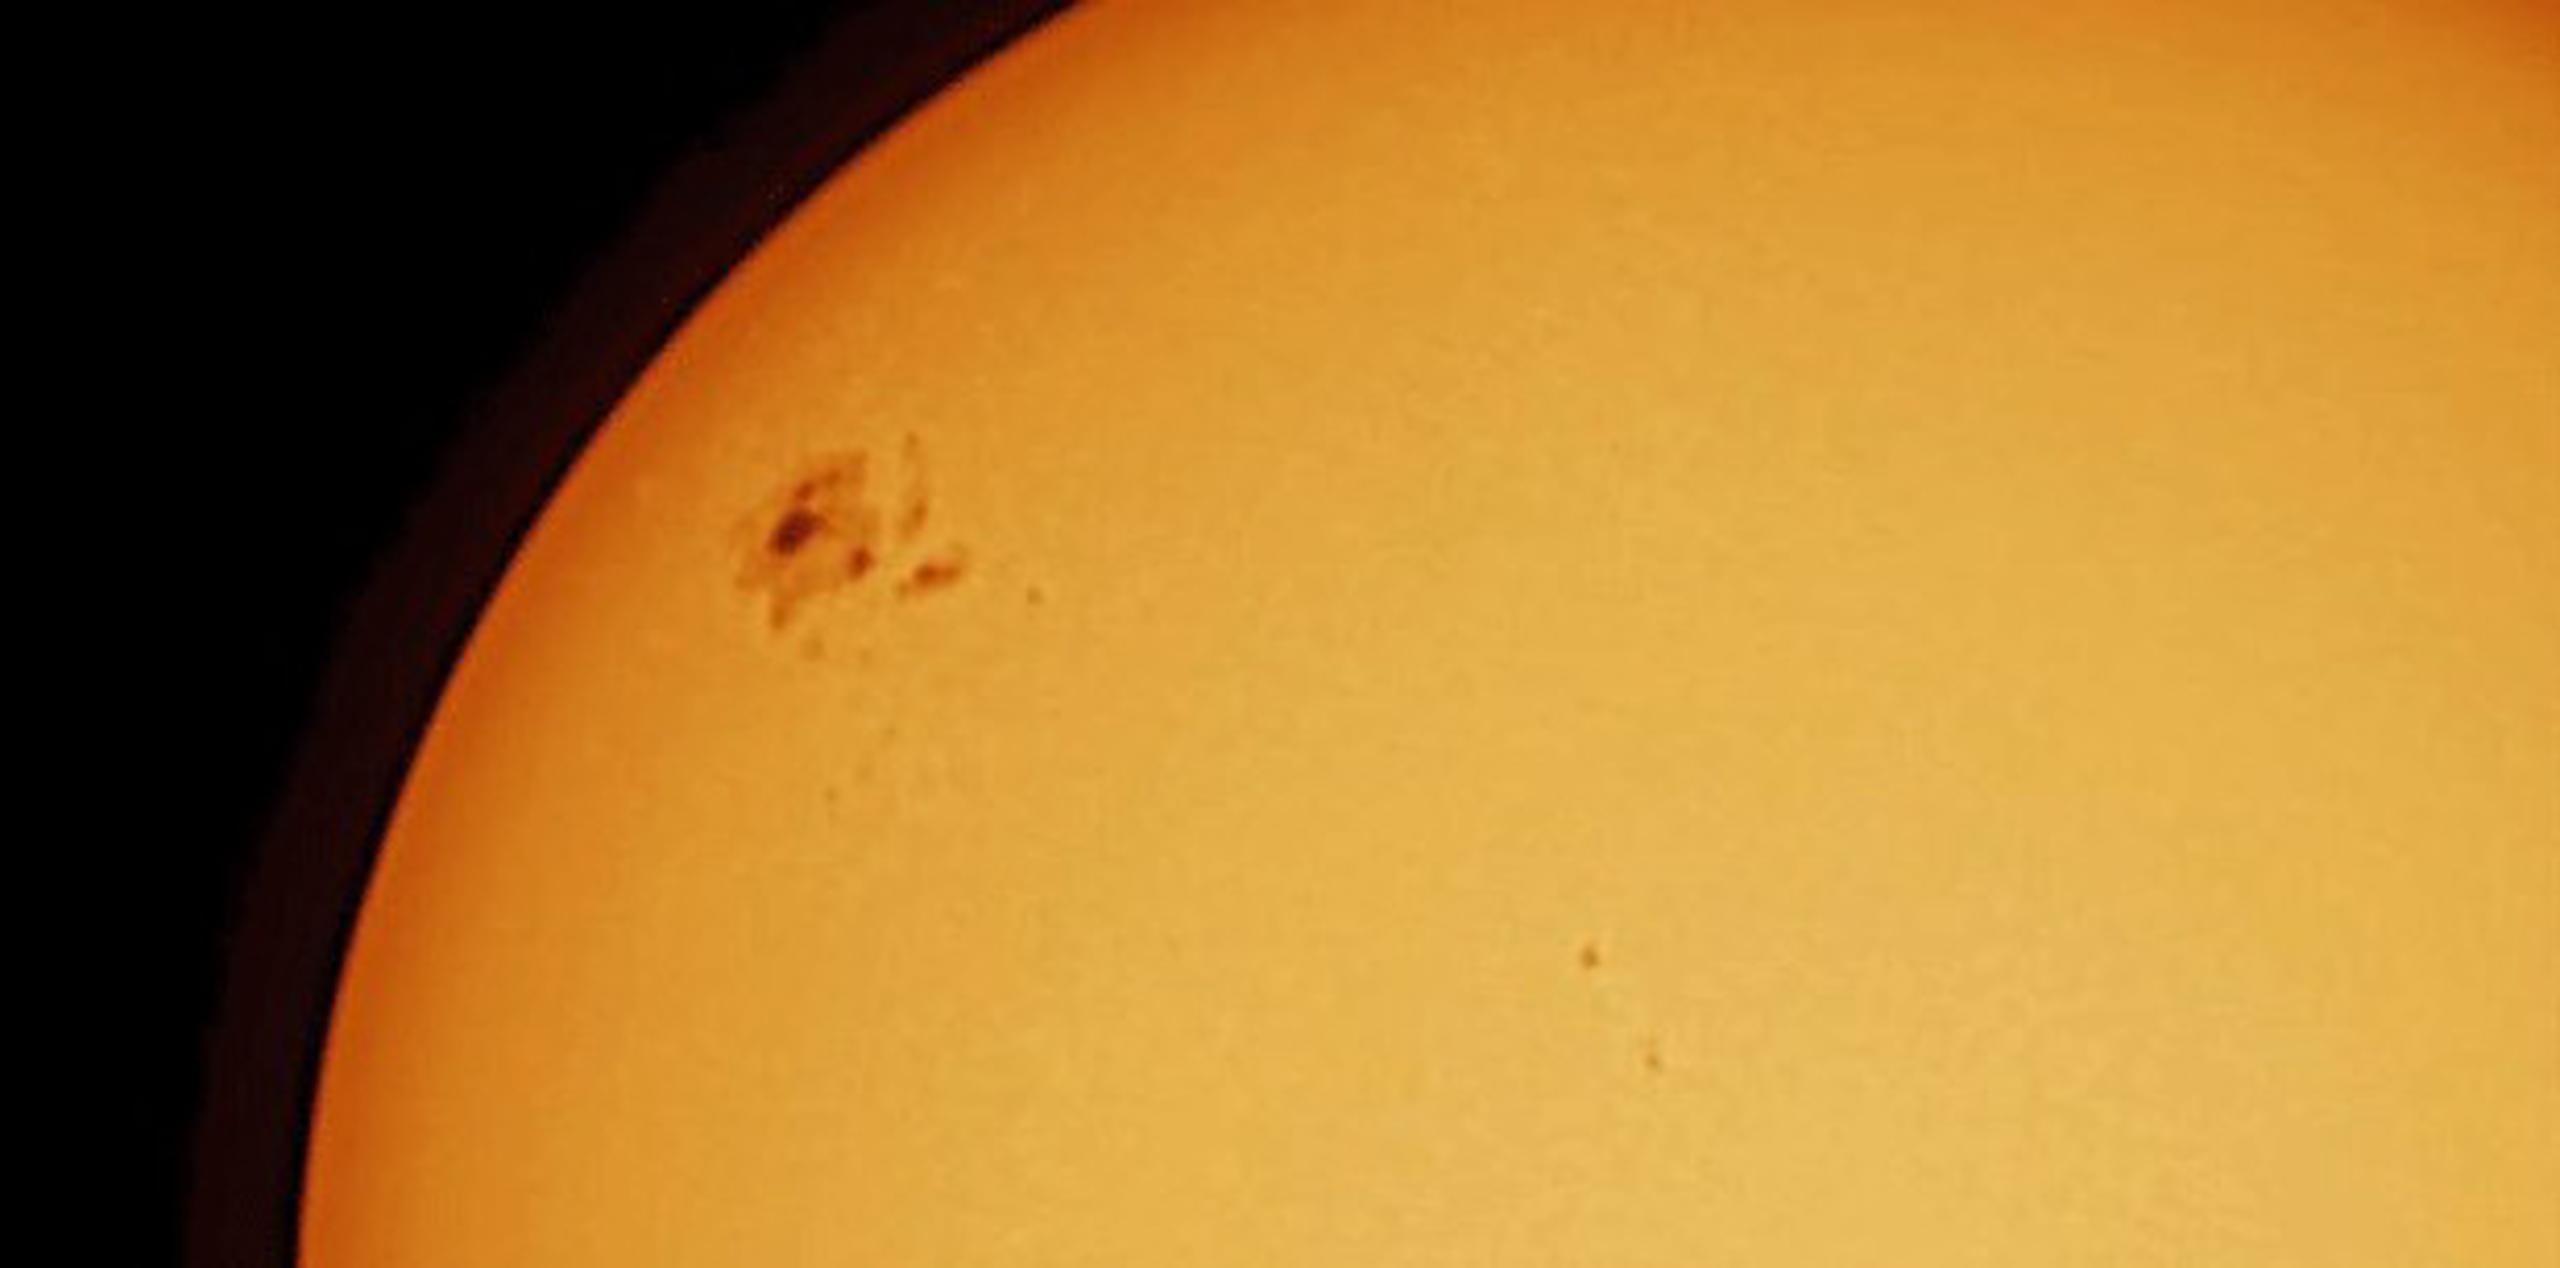 La SAC destacó que el tamaño de la mancha solar es de varias veces el diámetro de la Tierra y solo se puede mirar con un filtro especial. (Efraín Morales / Sociedad de Astronomía del Caribe)